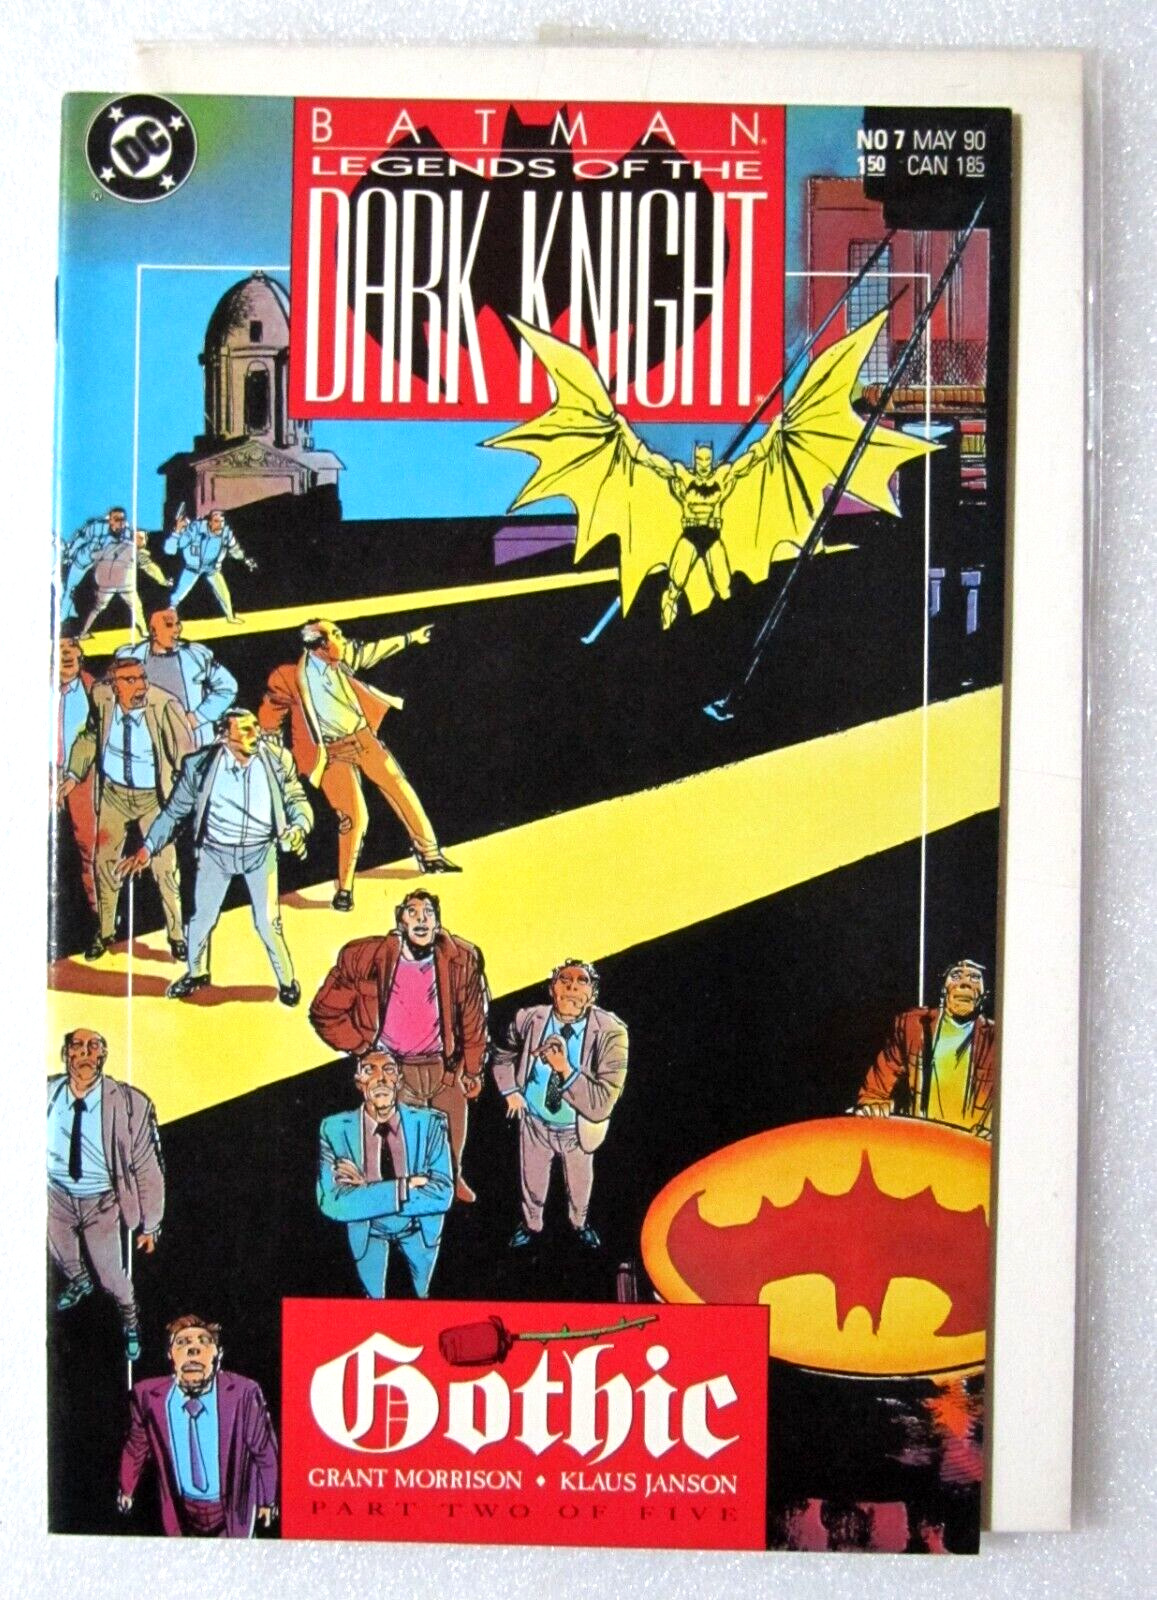 BATMAN LEGENDS OF THE DARK KNIGHT #7 1990 COPPER AGE DC COMIC - BOARDED - NEW